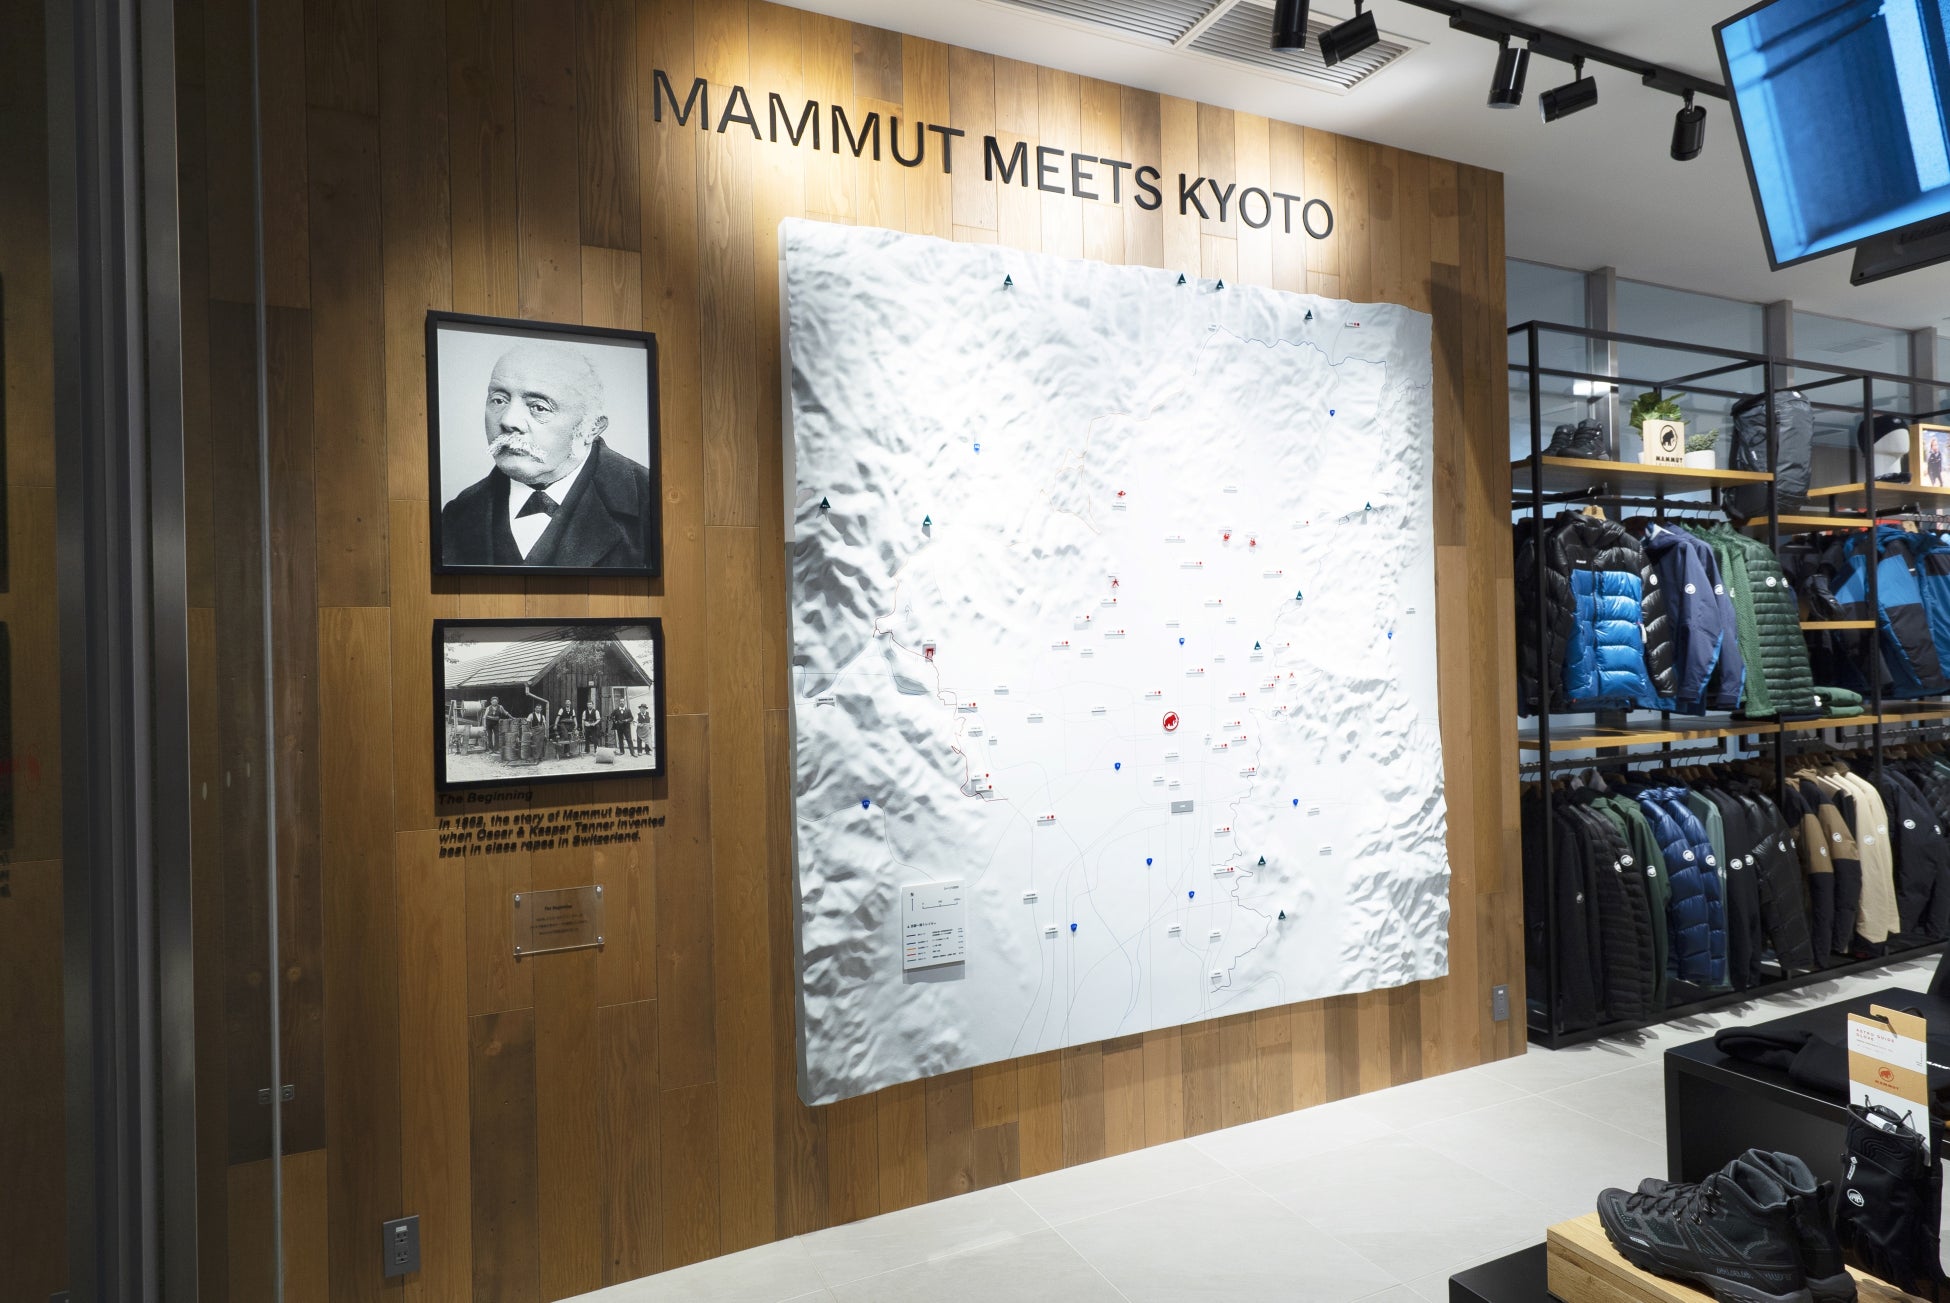 日本最大・西日本フラッグシップストア「マムート京都」の先行内覧会を実施。「MAMMUT MEETS KYOTO」がコンセプト山に囲まれた京都のアウトドアの魅力発信基地にのサブ画像2